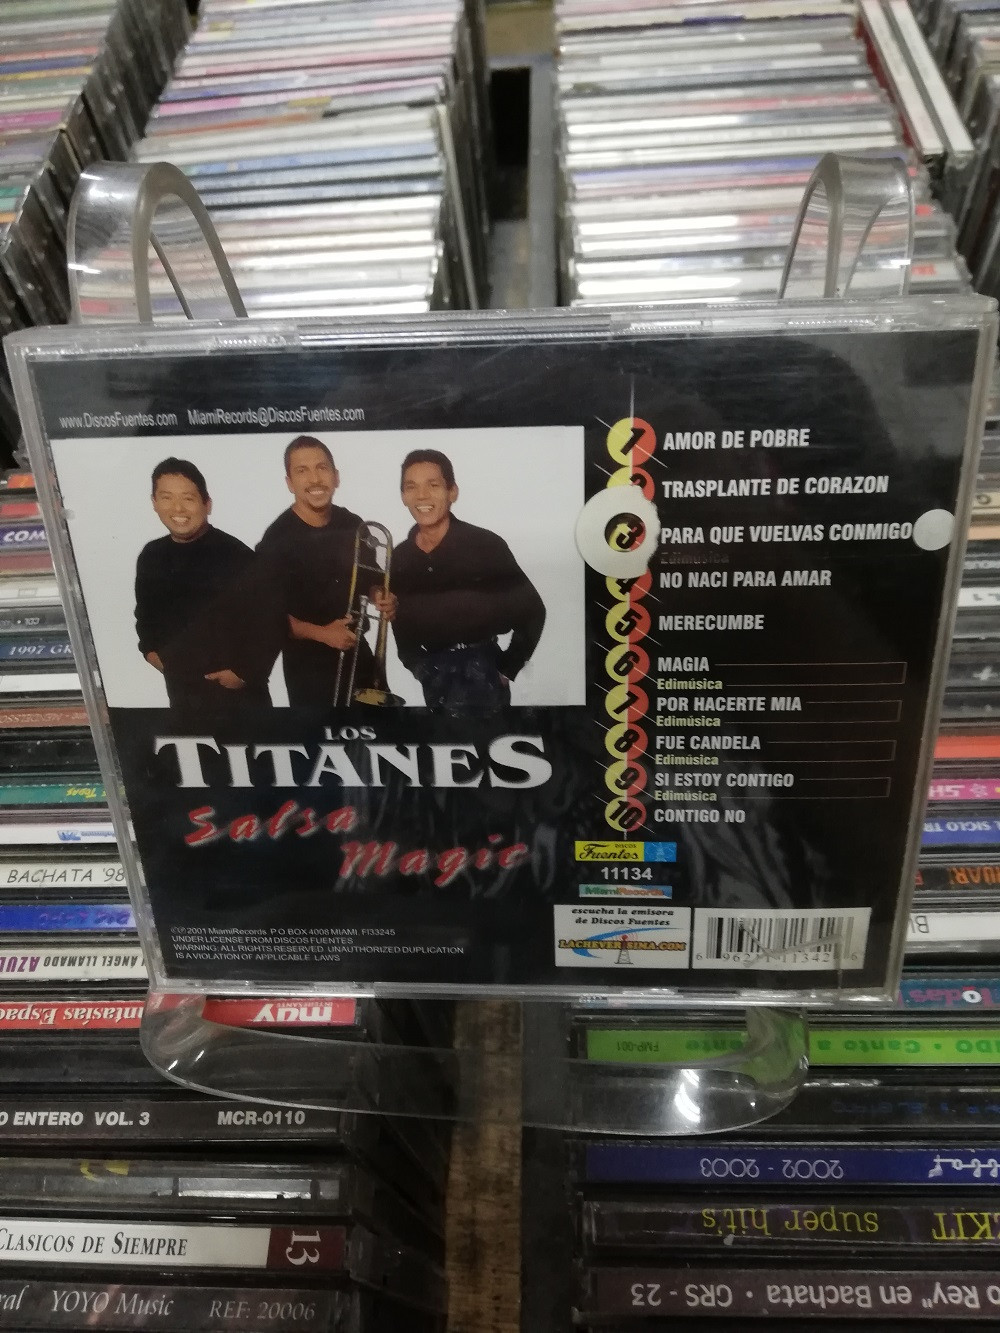 Imagen CD LOS TITANES - SALSA MAGIC 2